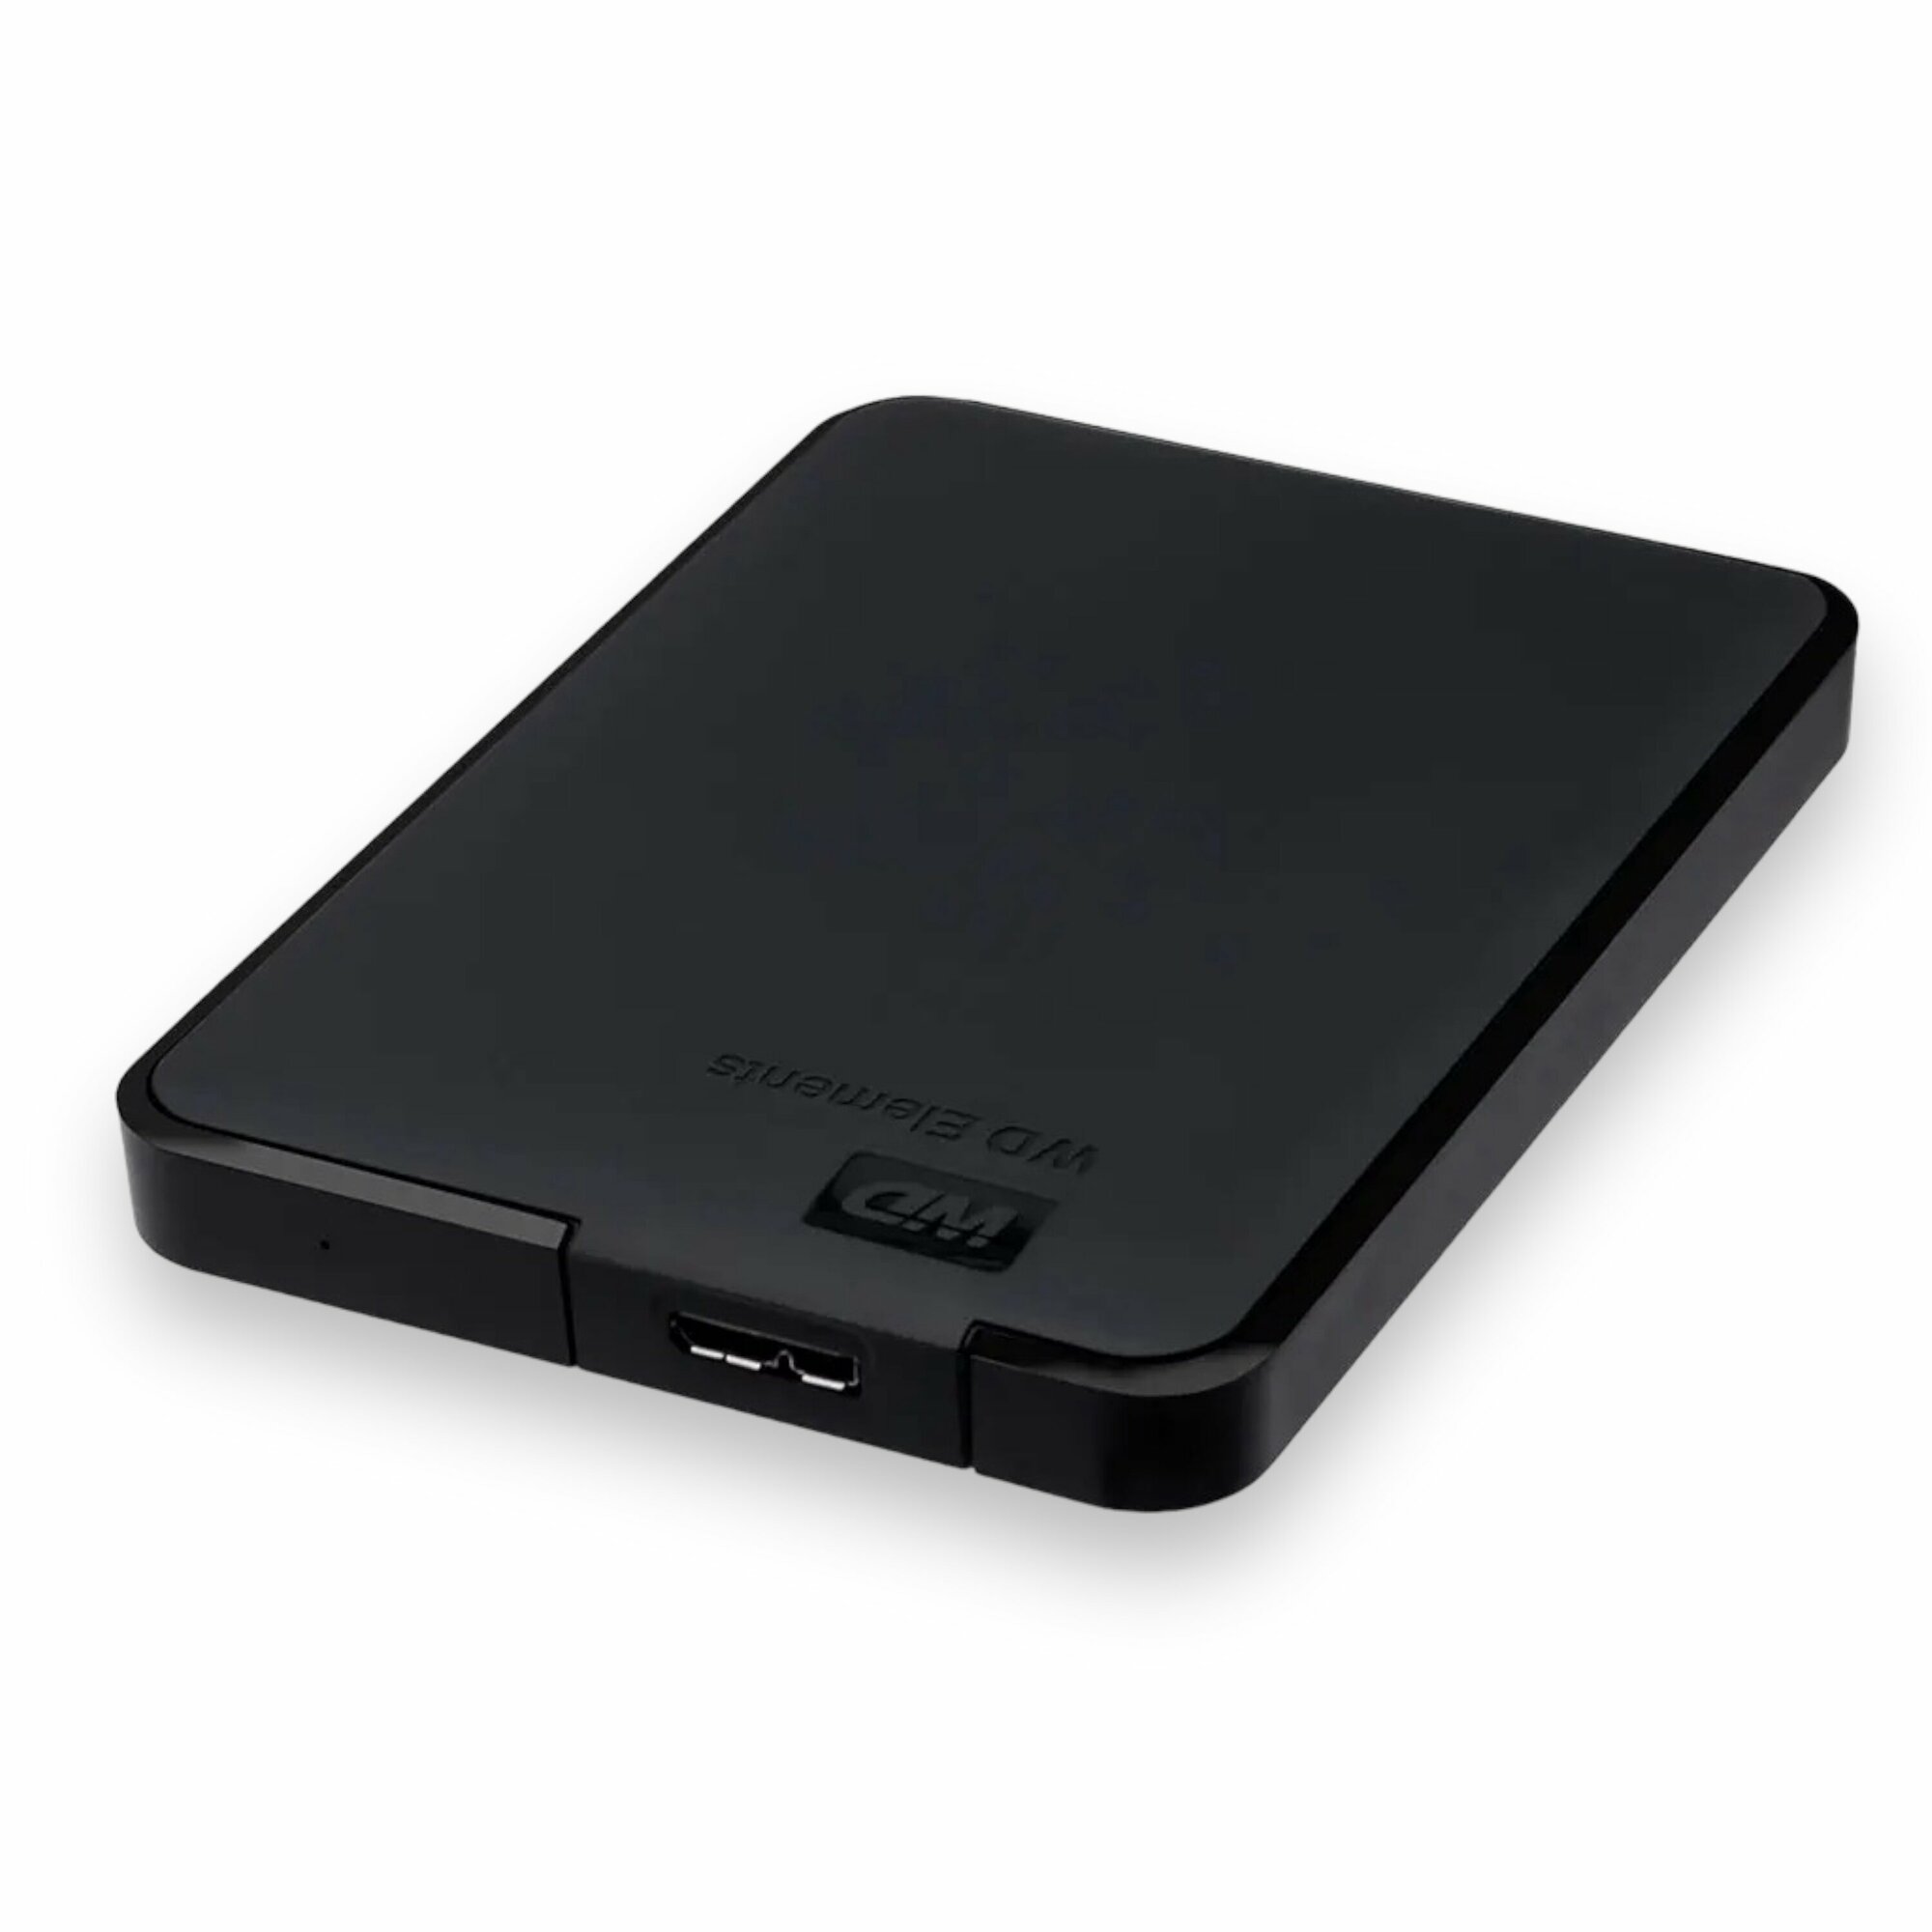 Внешний жесткий диск 500Gb Western Digital Elements HDD 2,5" USB 3.0 черный